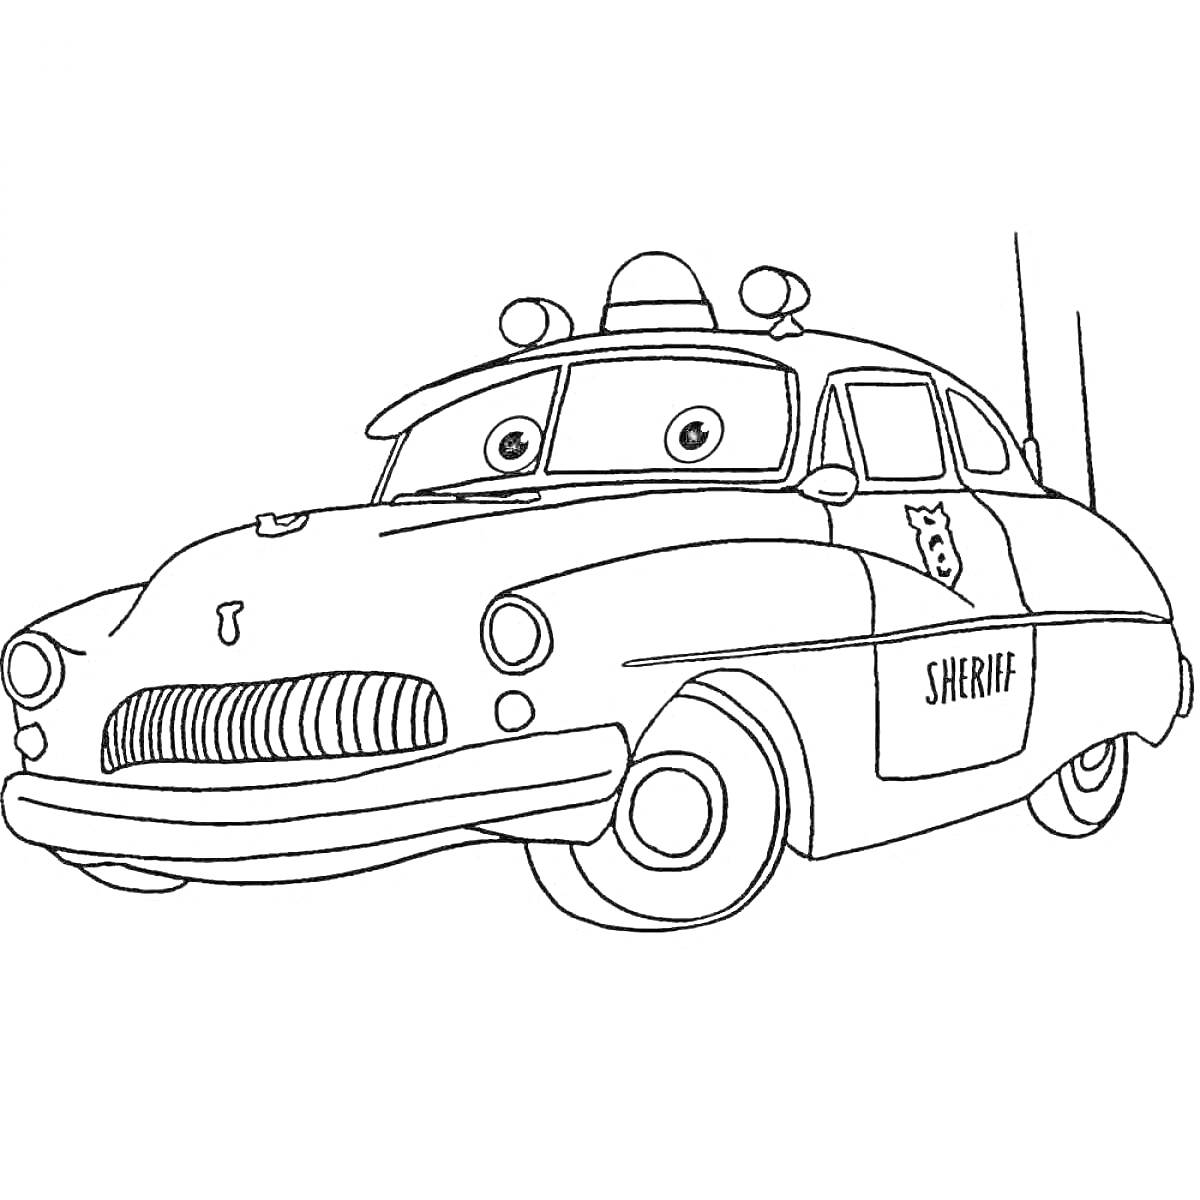 Раскраска Машинка-шериф с глазами, мигалкой и надписью 